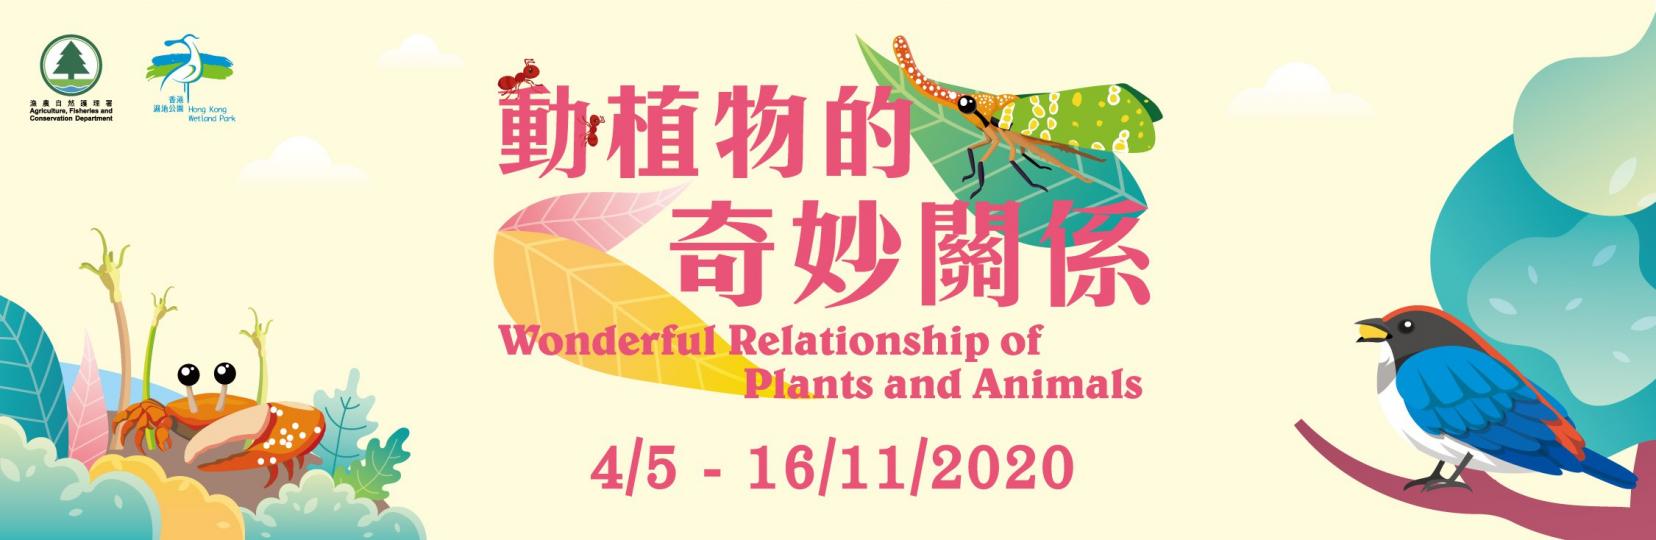 「動植物的奇妙關係」專題展覽